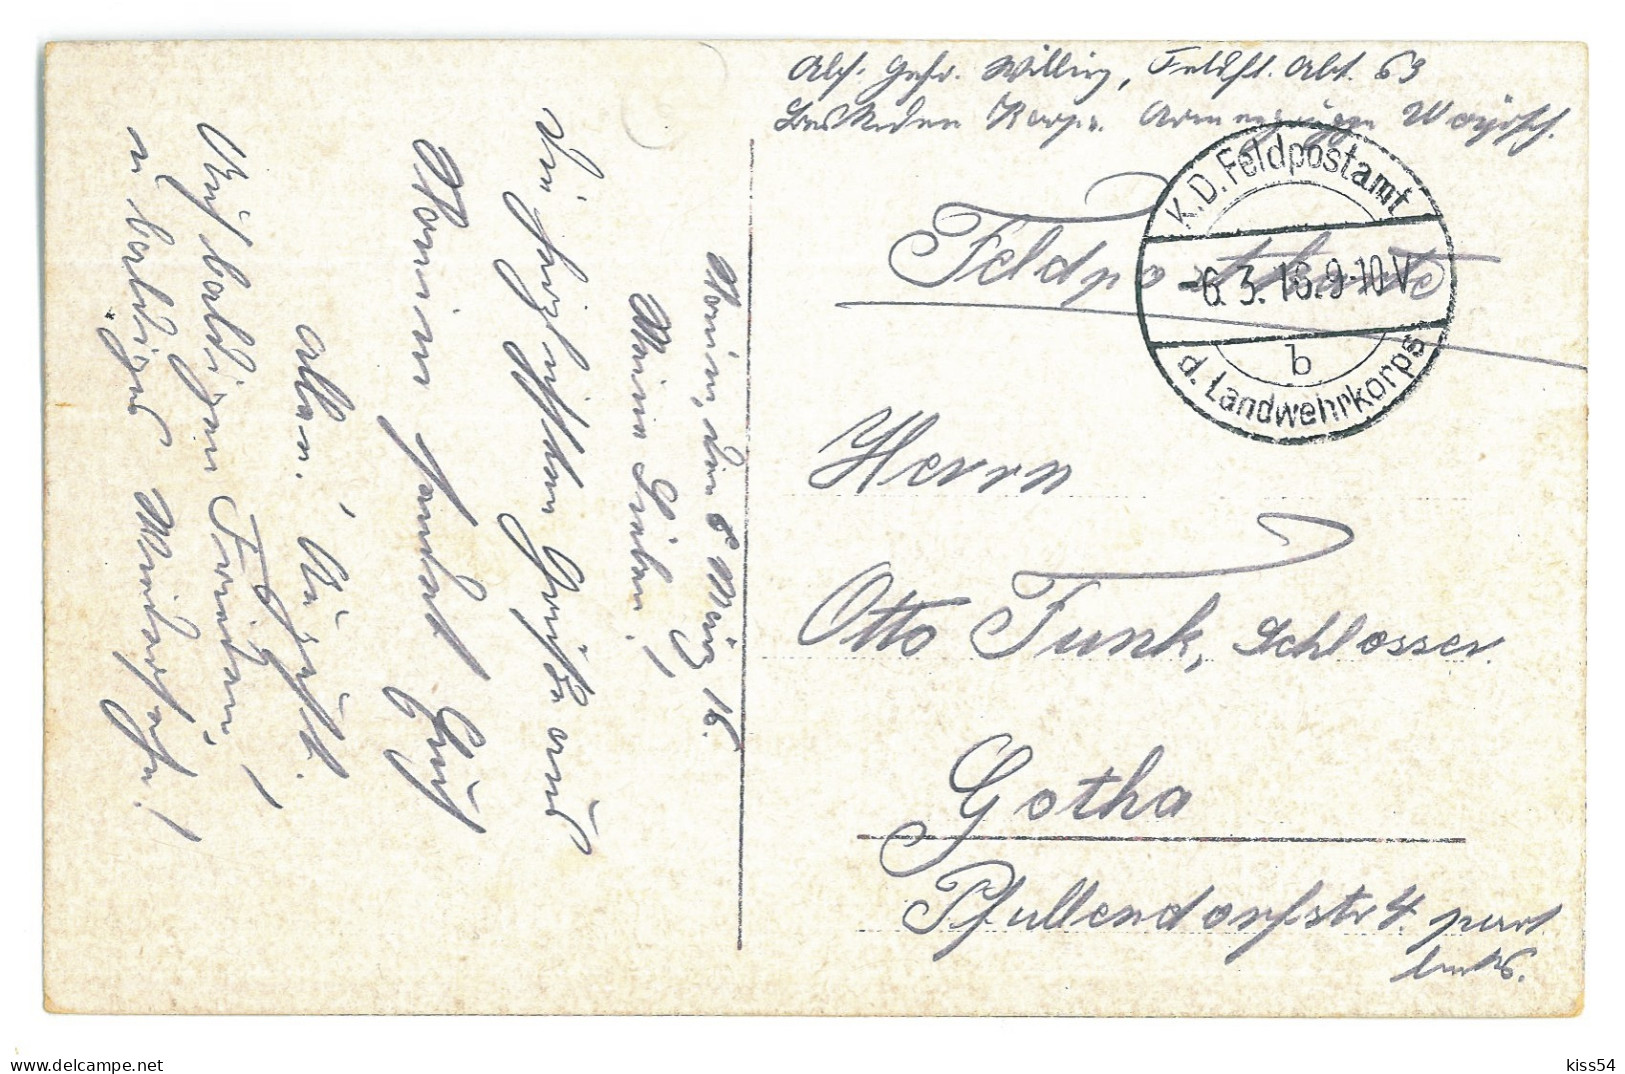 BL 21 - 24572 SLONIM, Street, Belarus - Old Postcard, CENSOR - Used - 1916 - Belarus